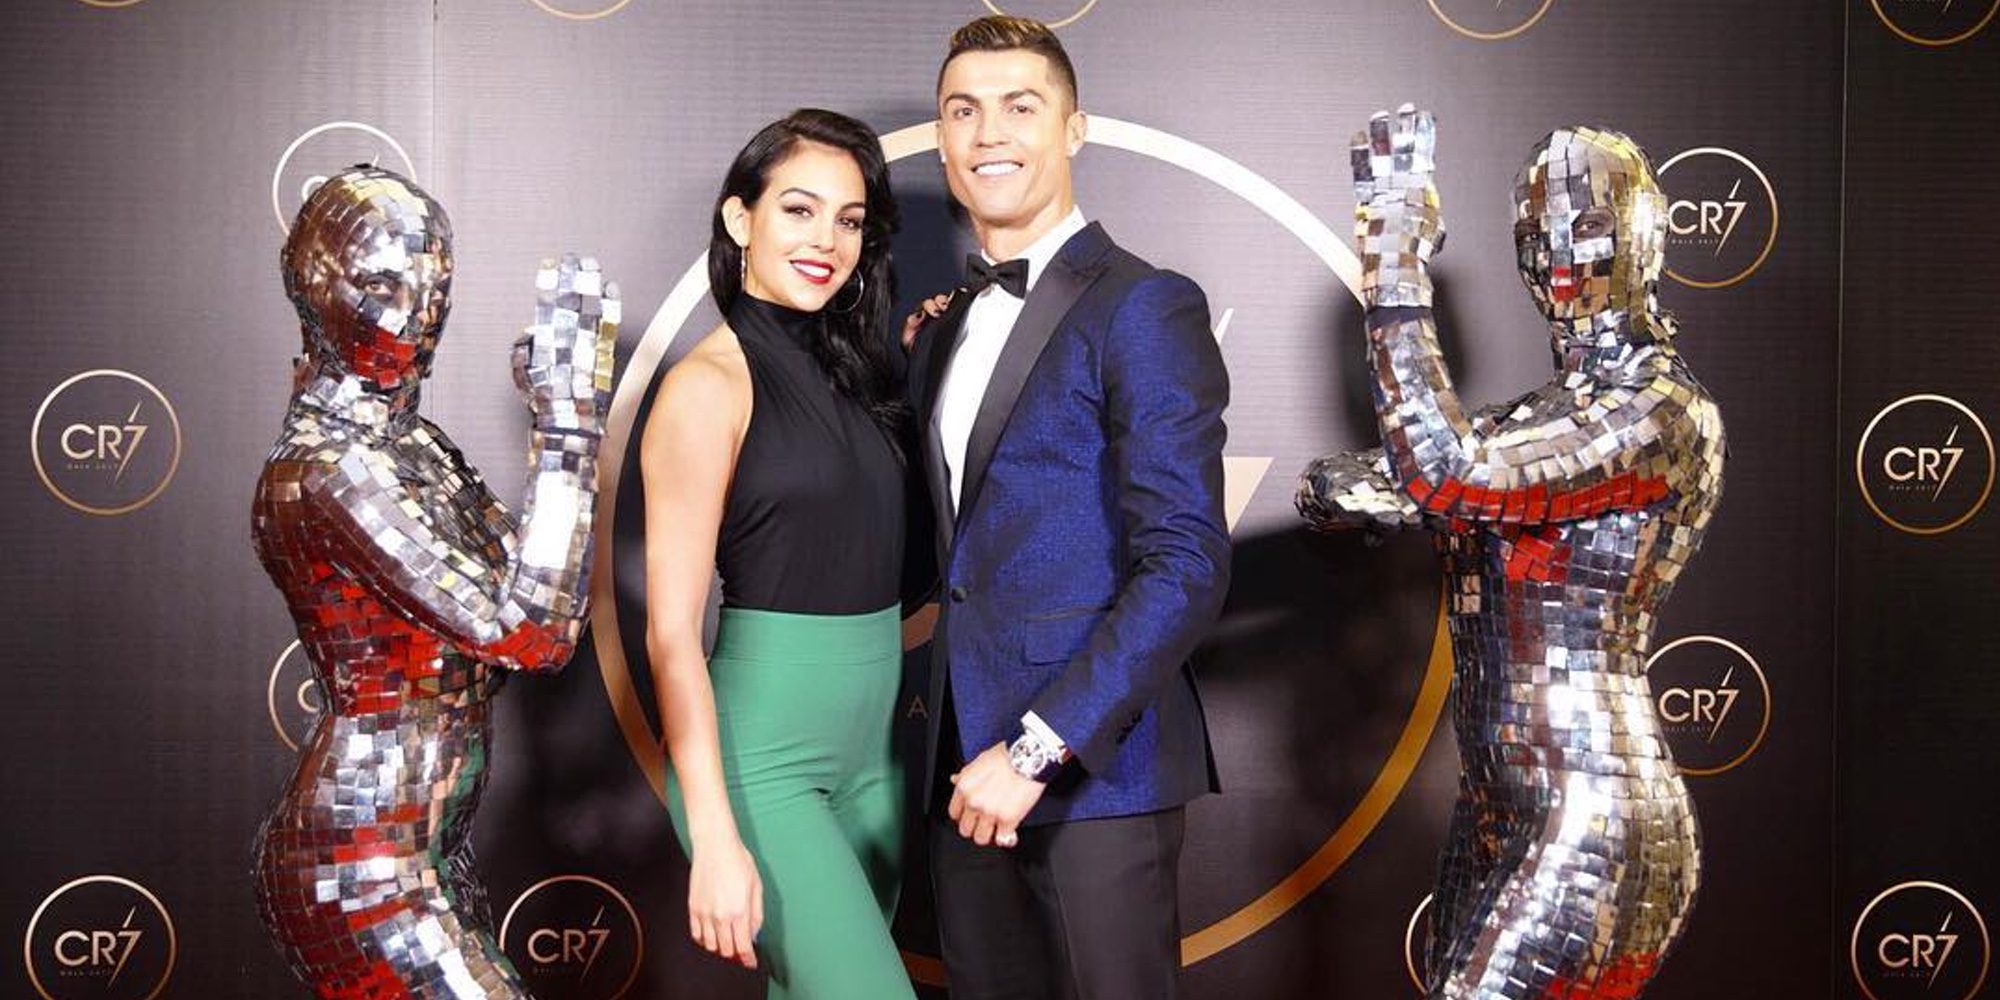 Cristiano Ronaldo celebra una fiesta en su honor porque ha tenido un año maravilloso